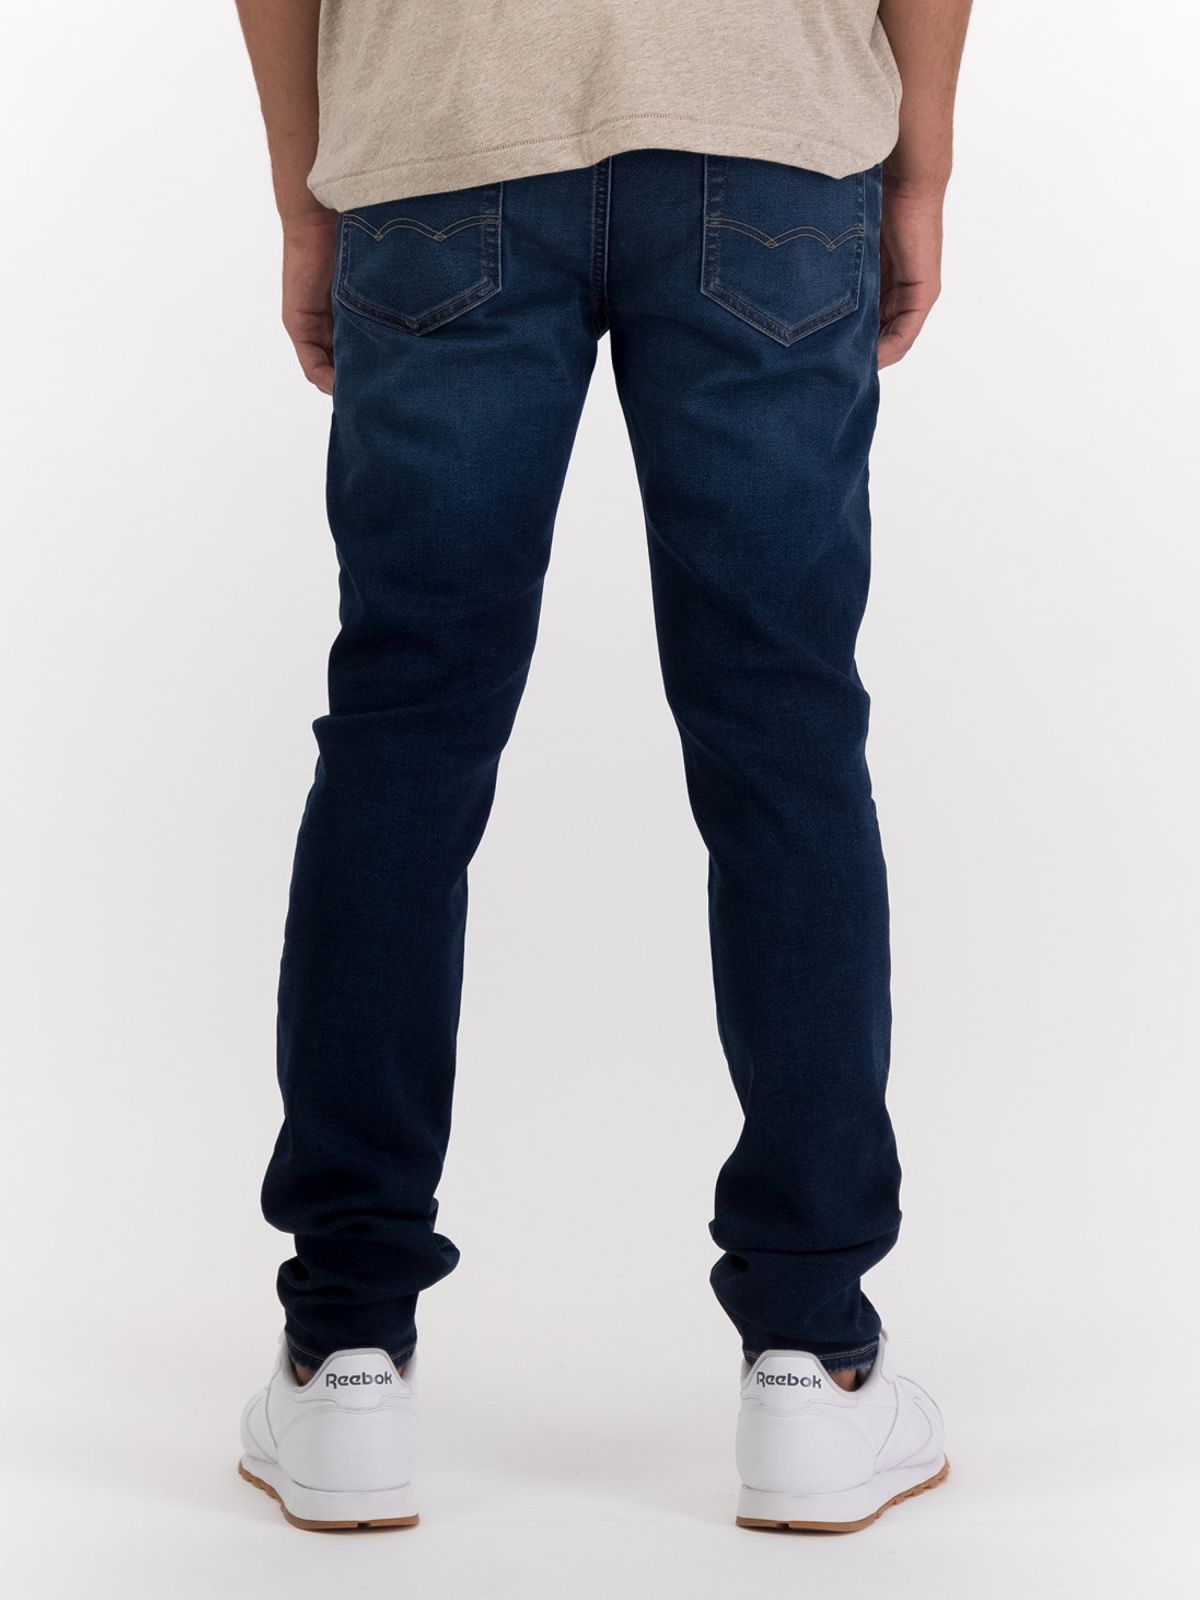  ג'ינס  ווש בגזרת Skinny של AMERICAN EAGLE